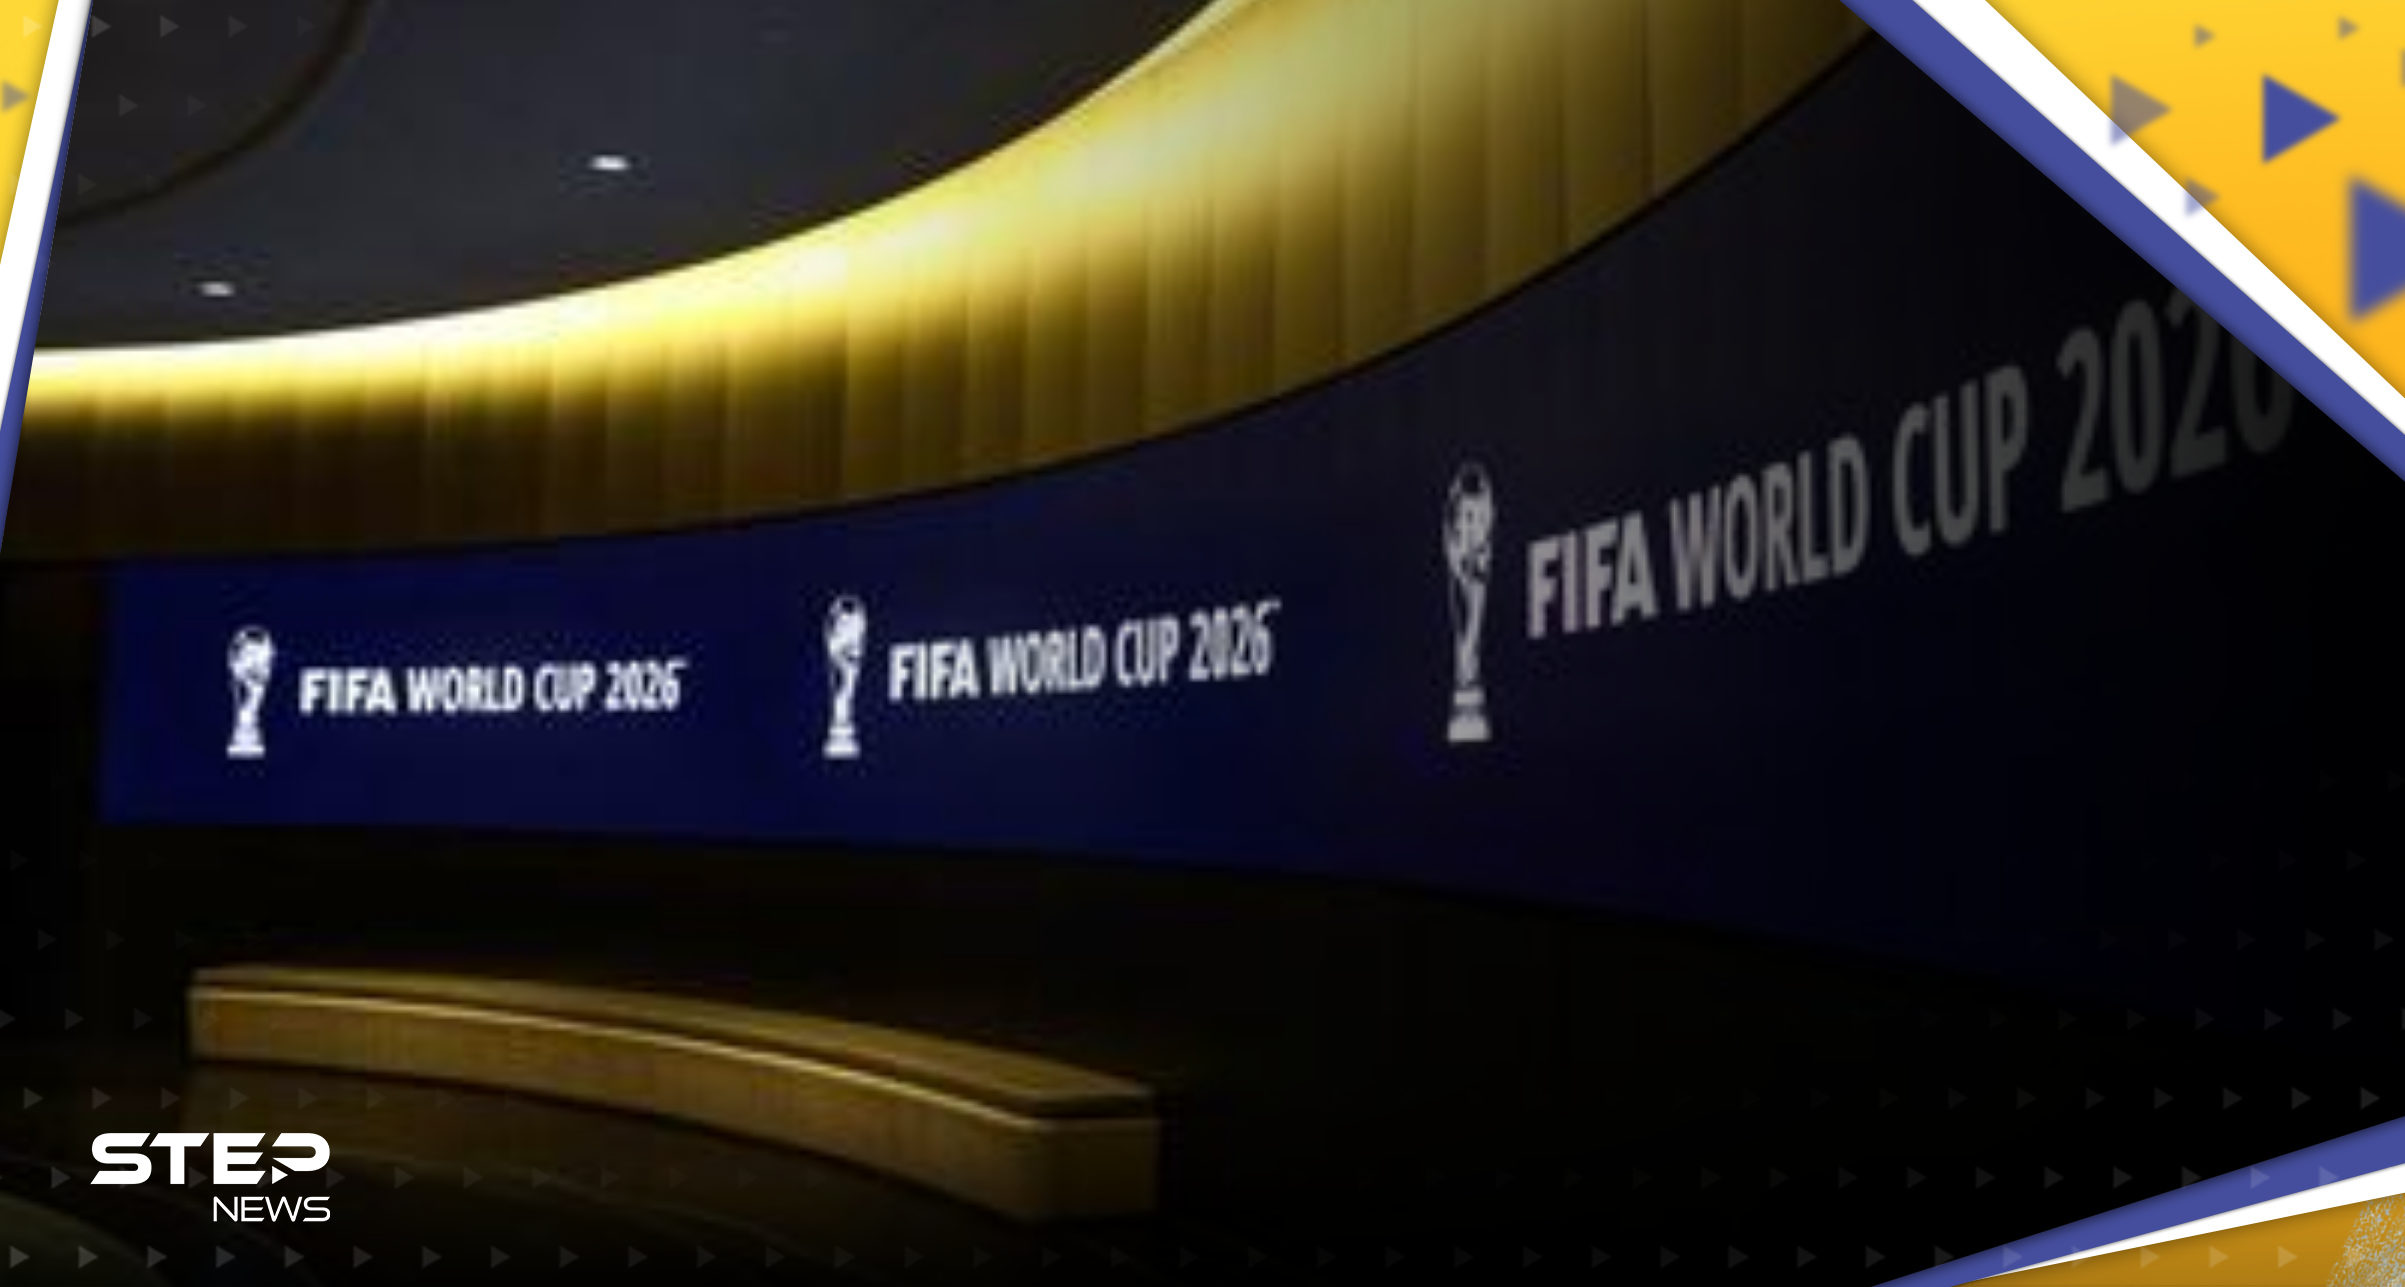 الفيفا يعلن تغييرات جديدة في بطولة كأس العالم بدءاً من مونديال 2026 